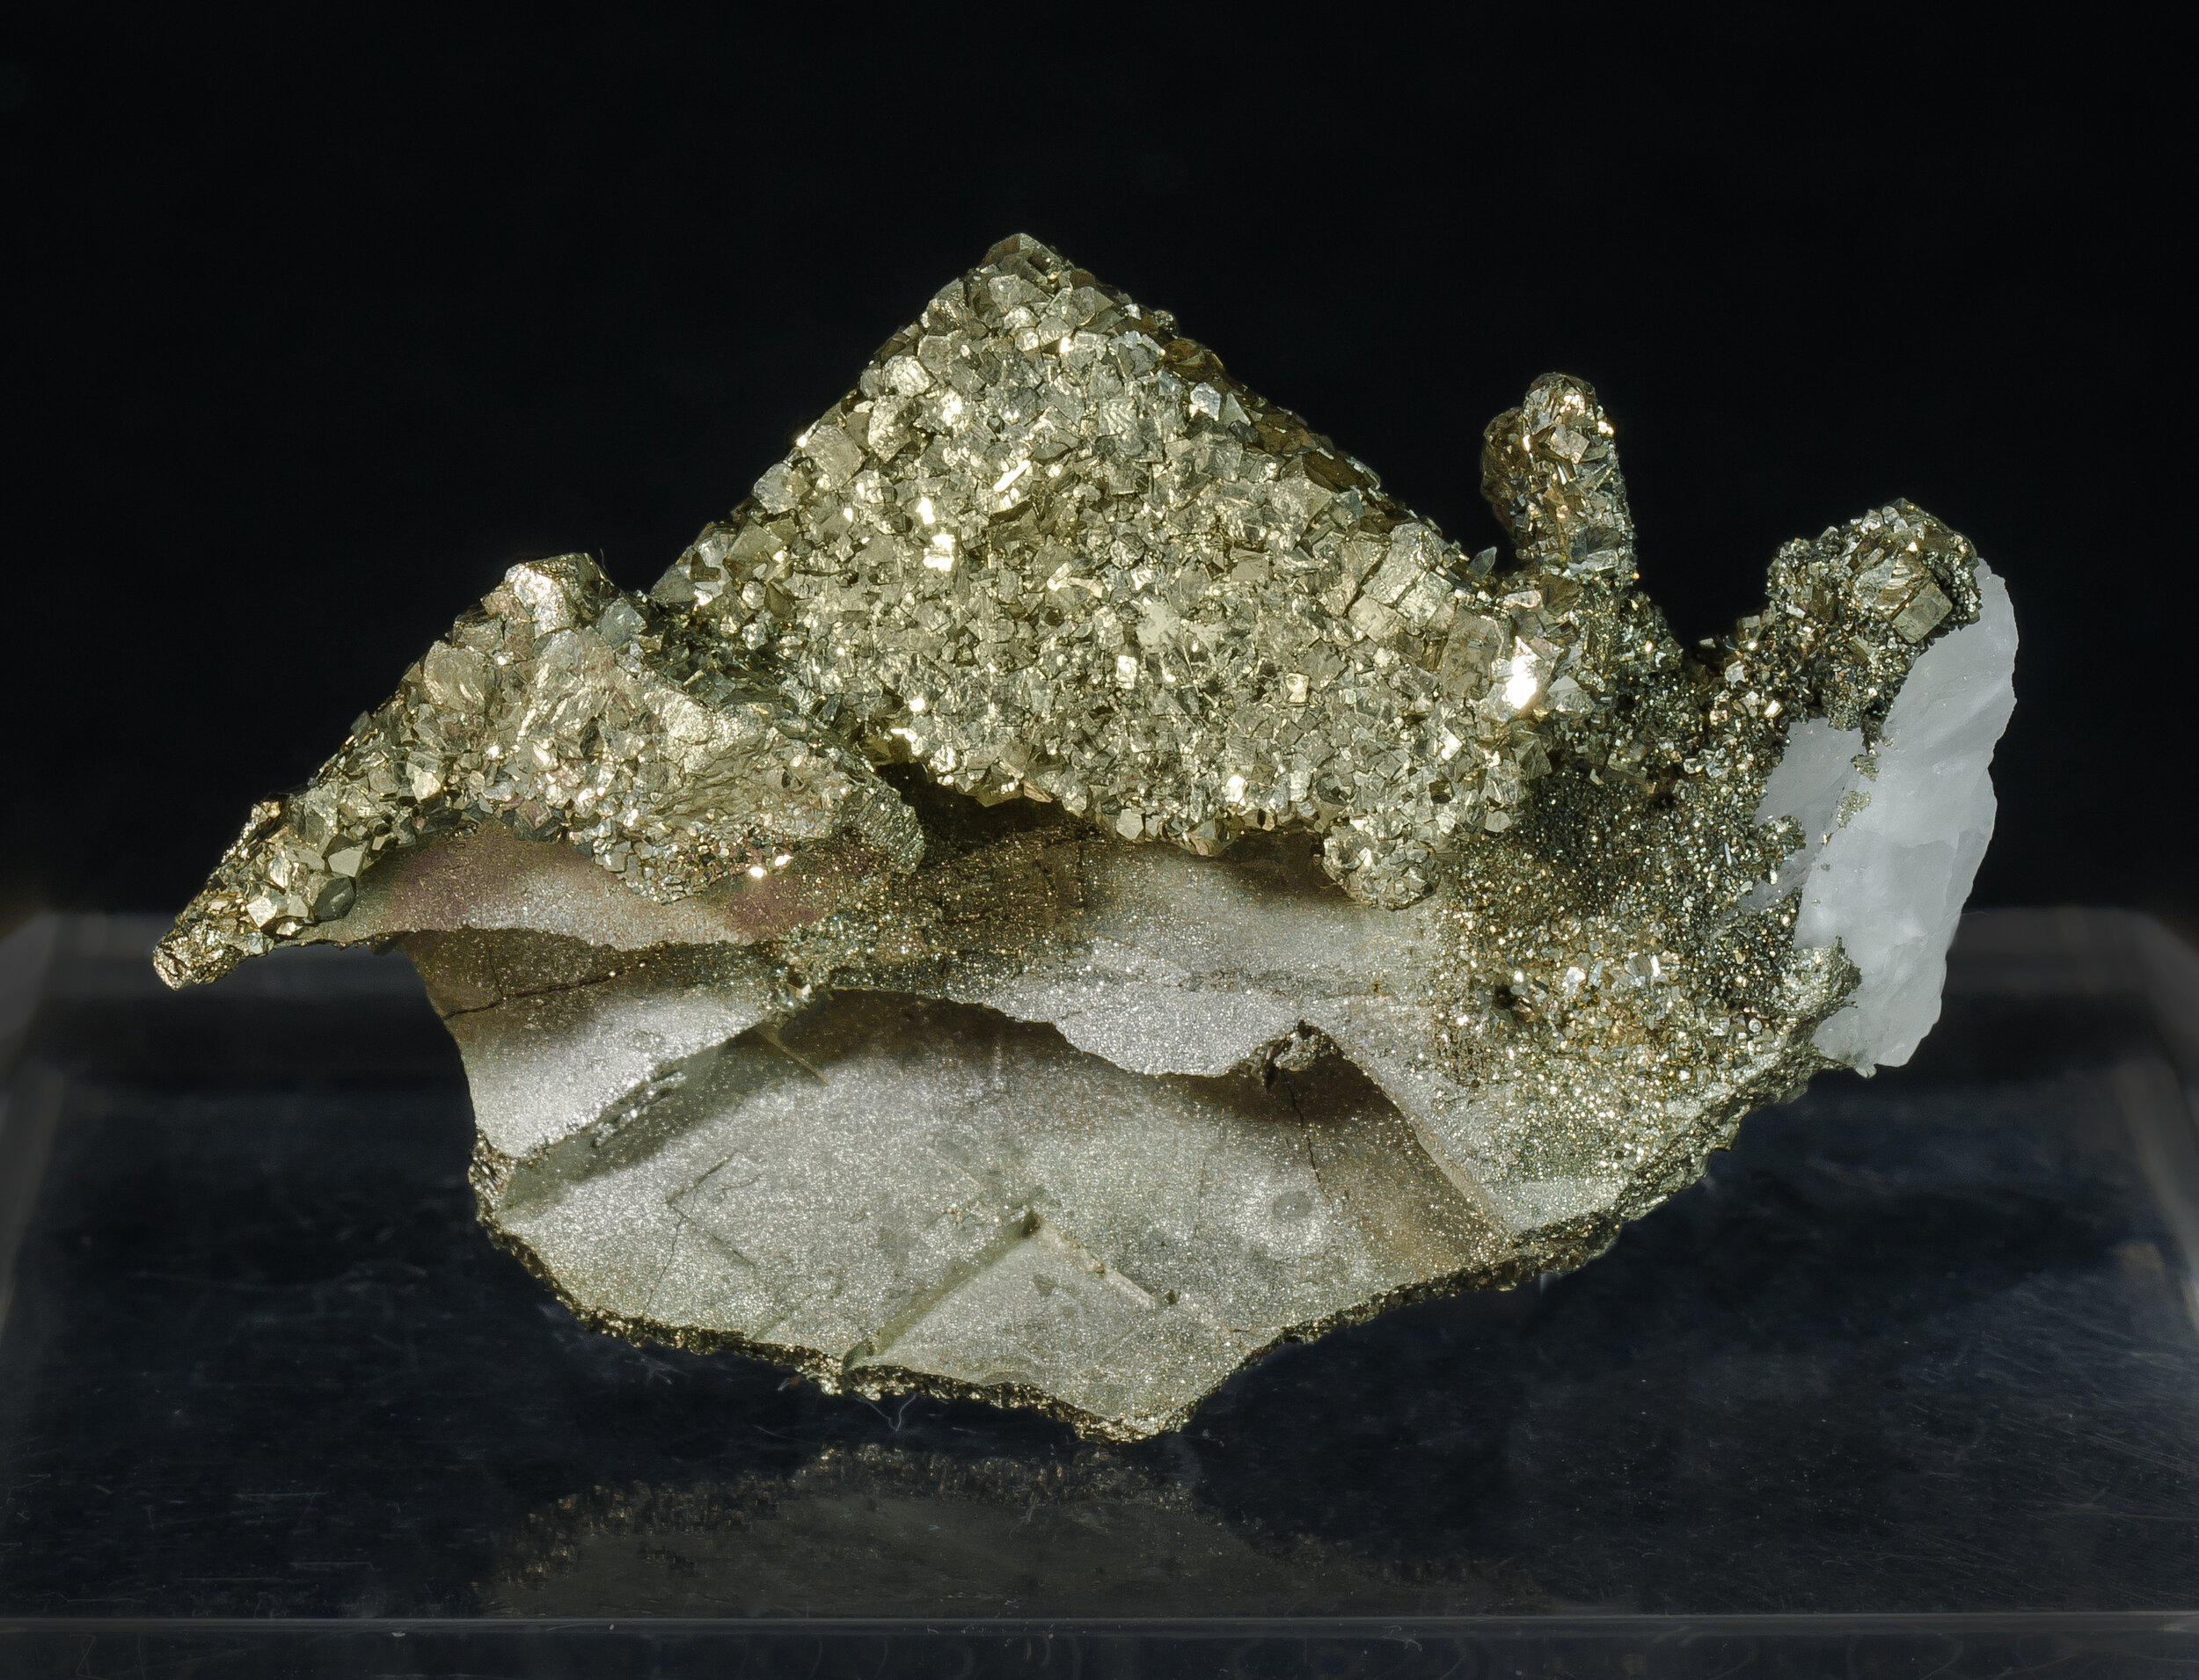 specimens/s_imagesCM/Pyrite-16MJM60_r.jpg